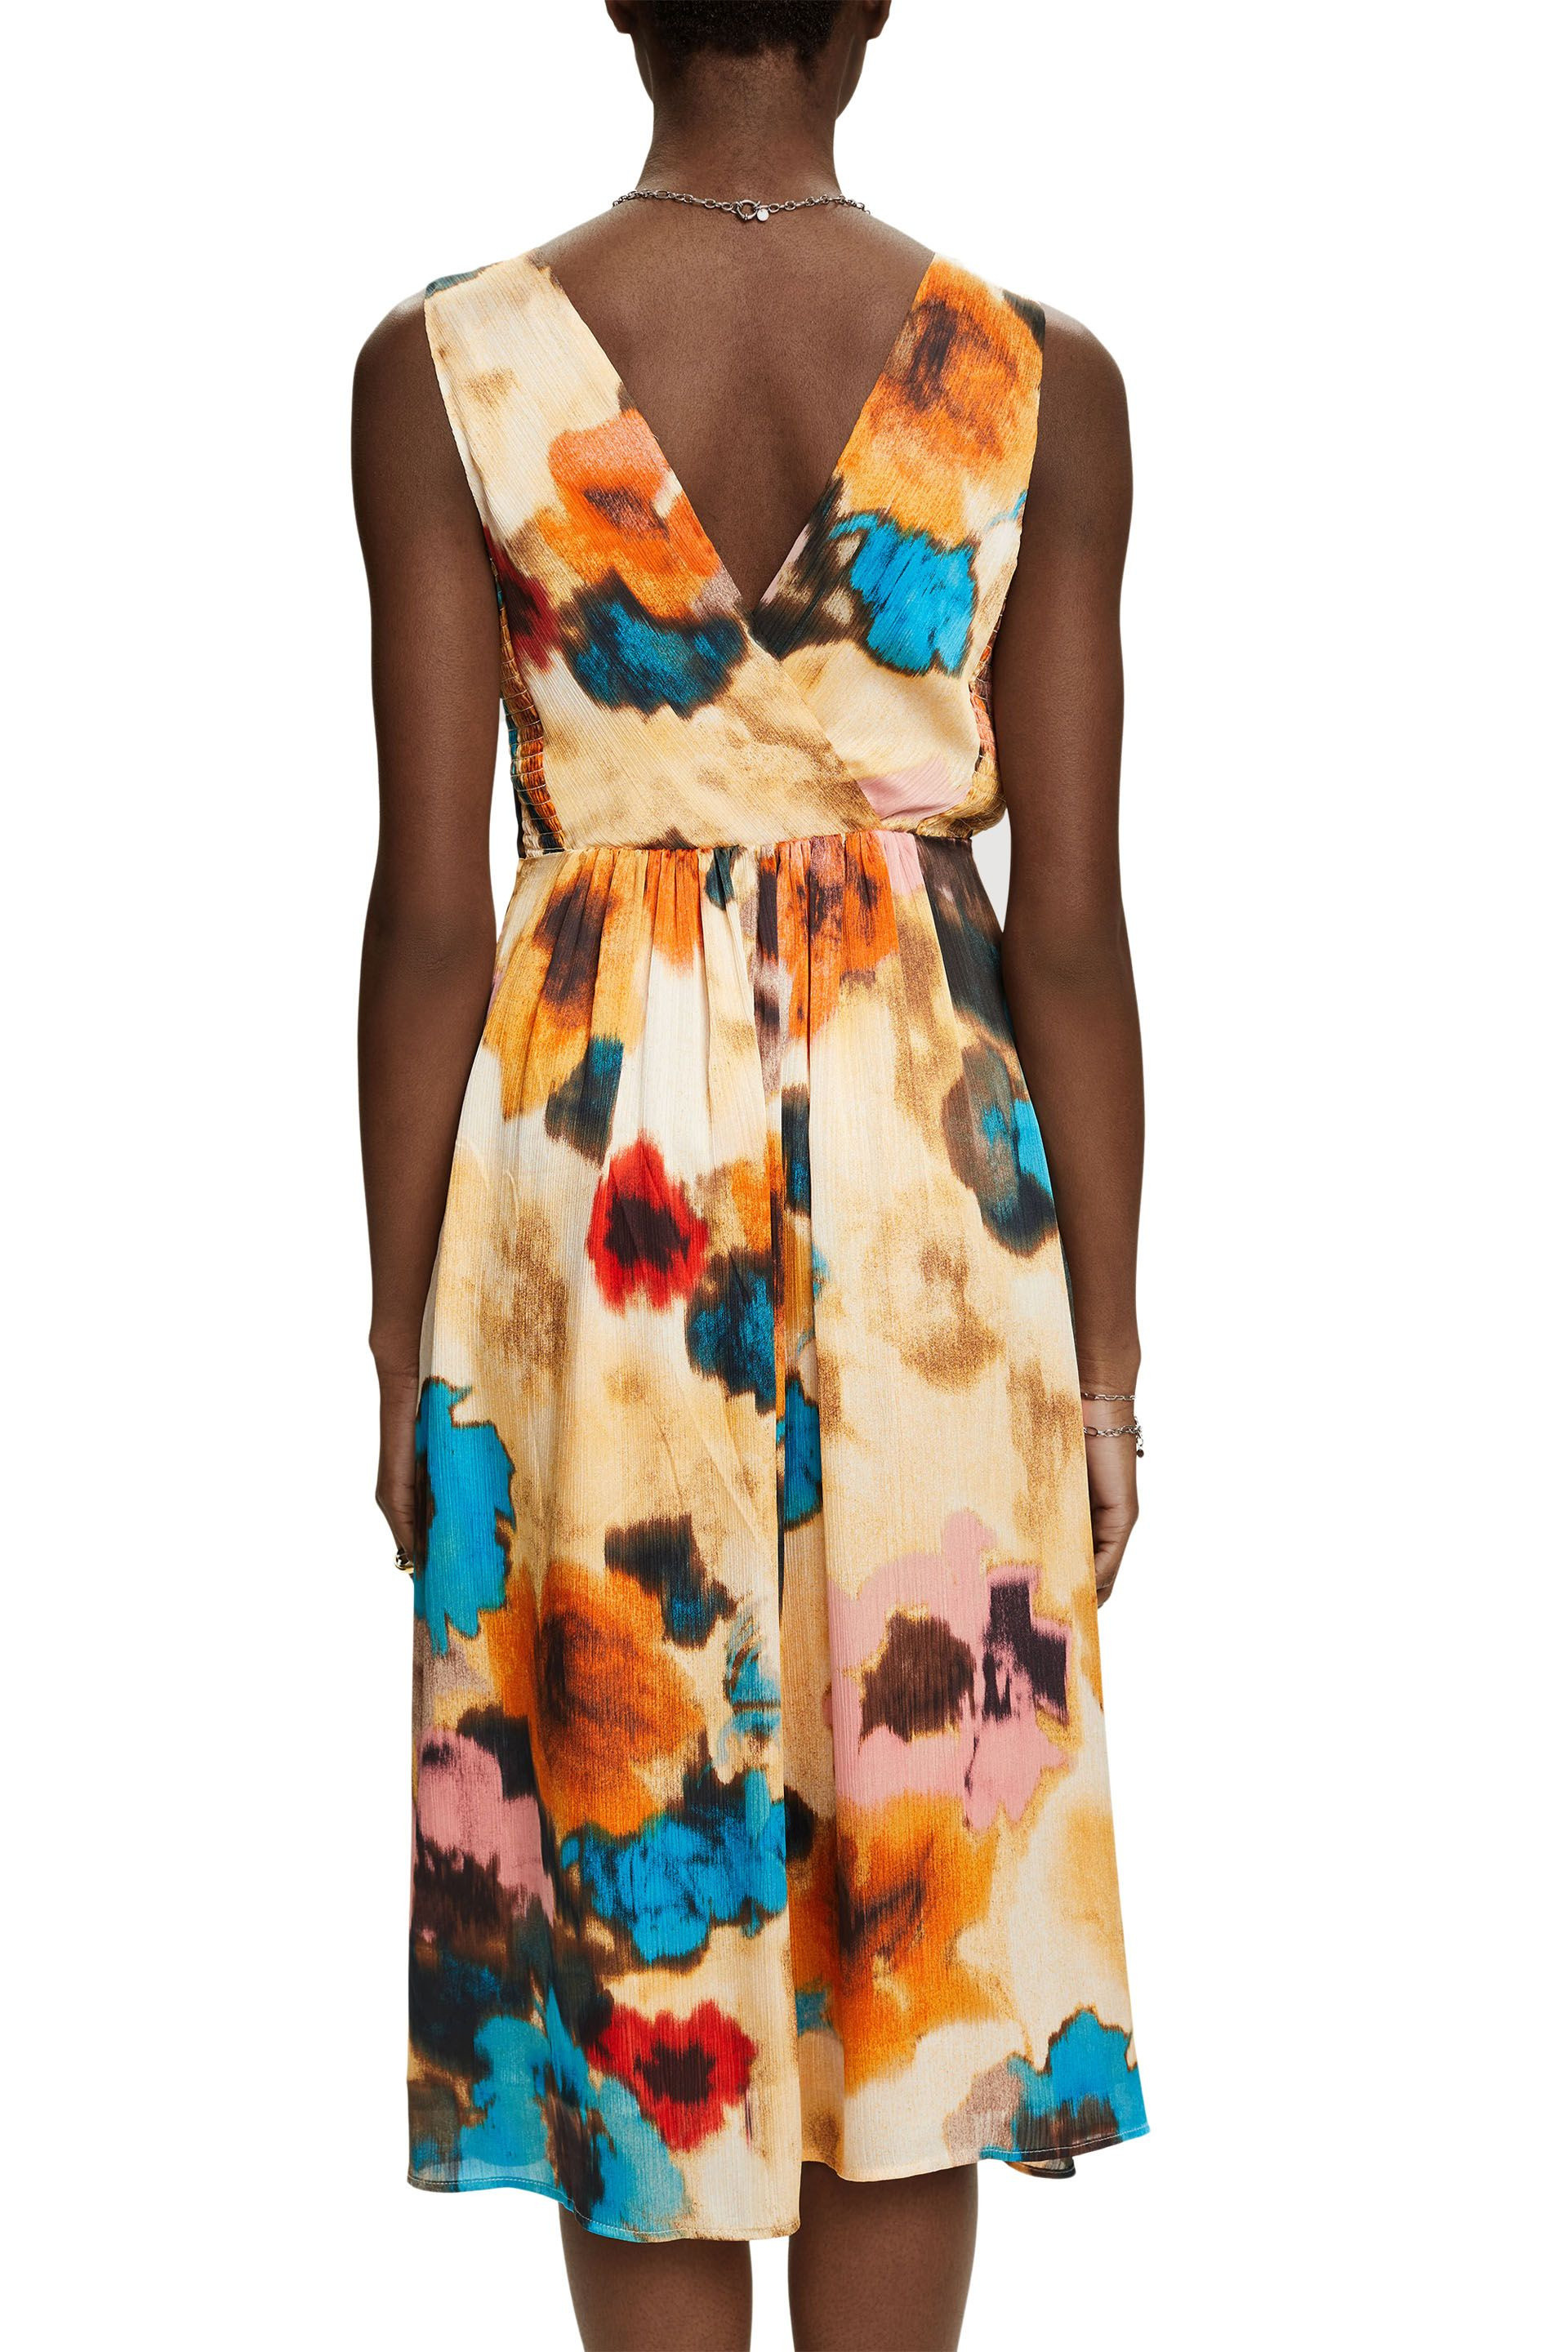 Esprit - Dress with all over floral print, Light Beige, large image number 3